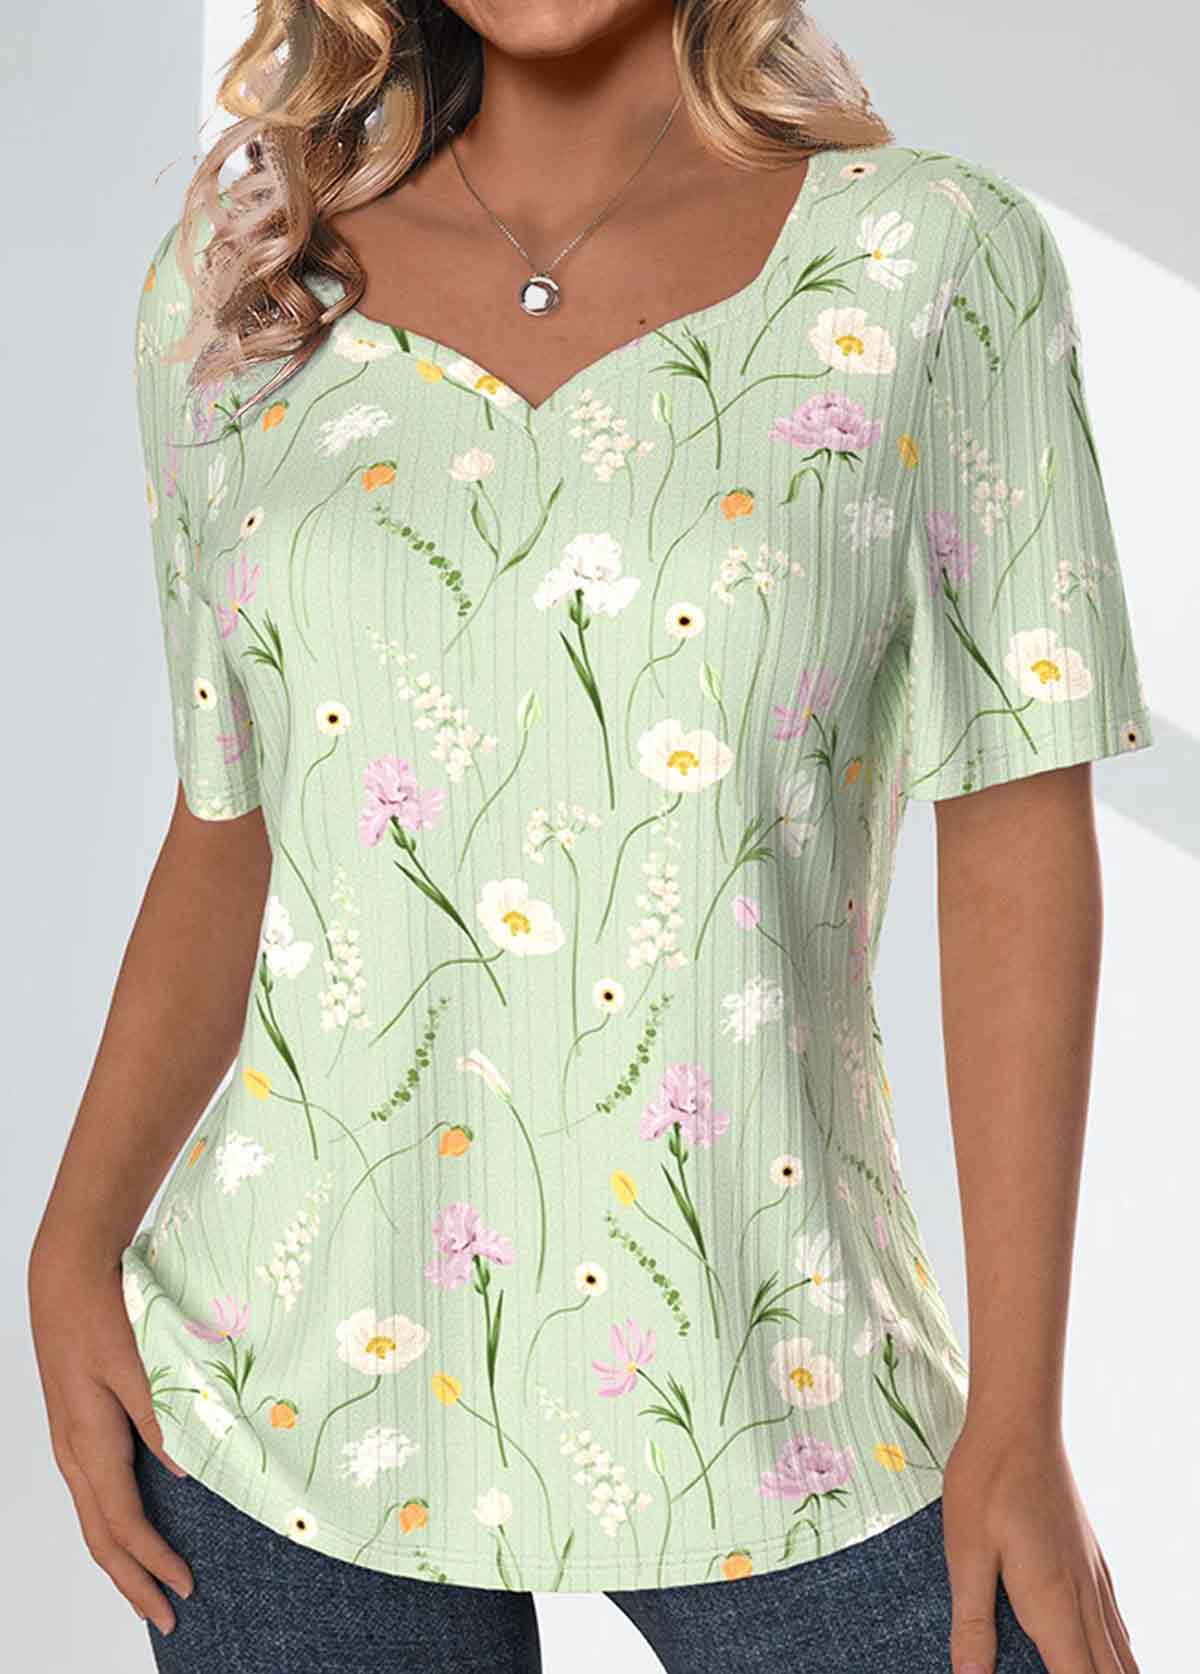 Floral Print Textured Fabric Light Green T Shirt